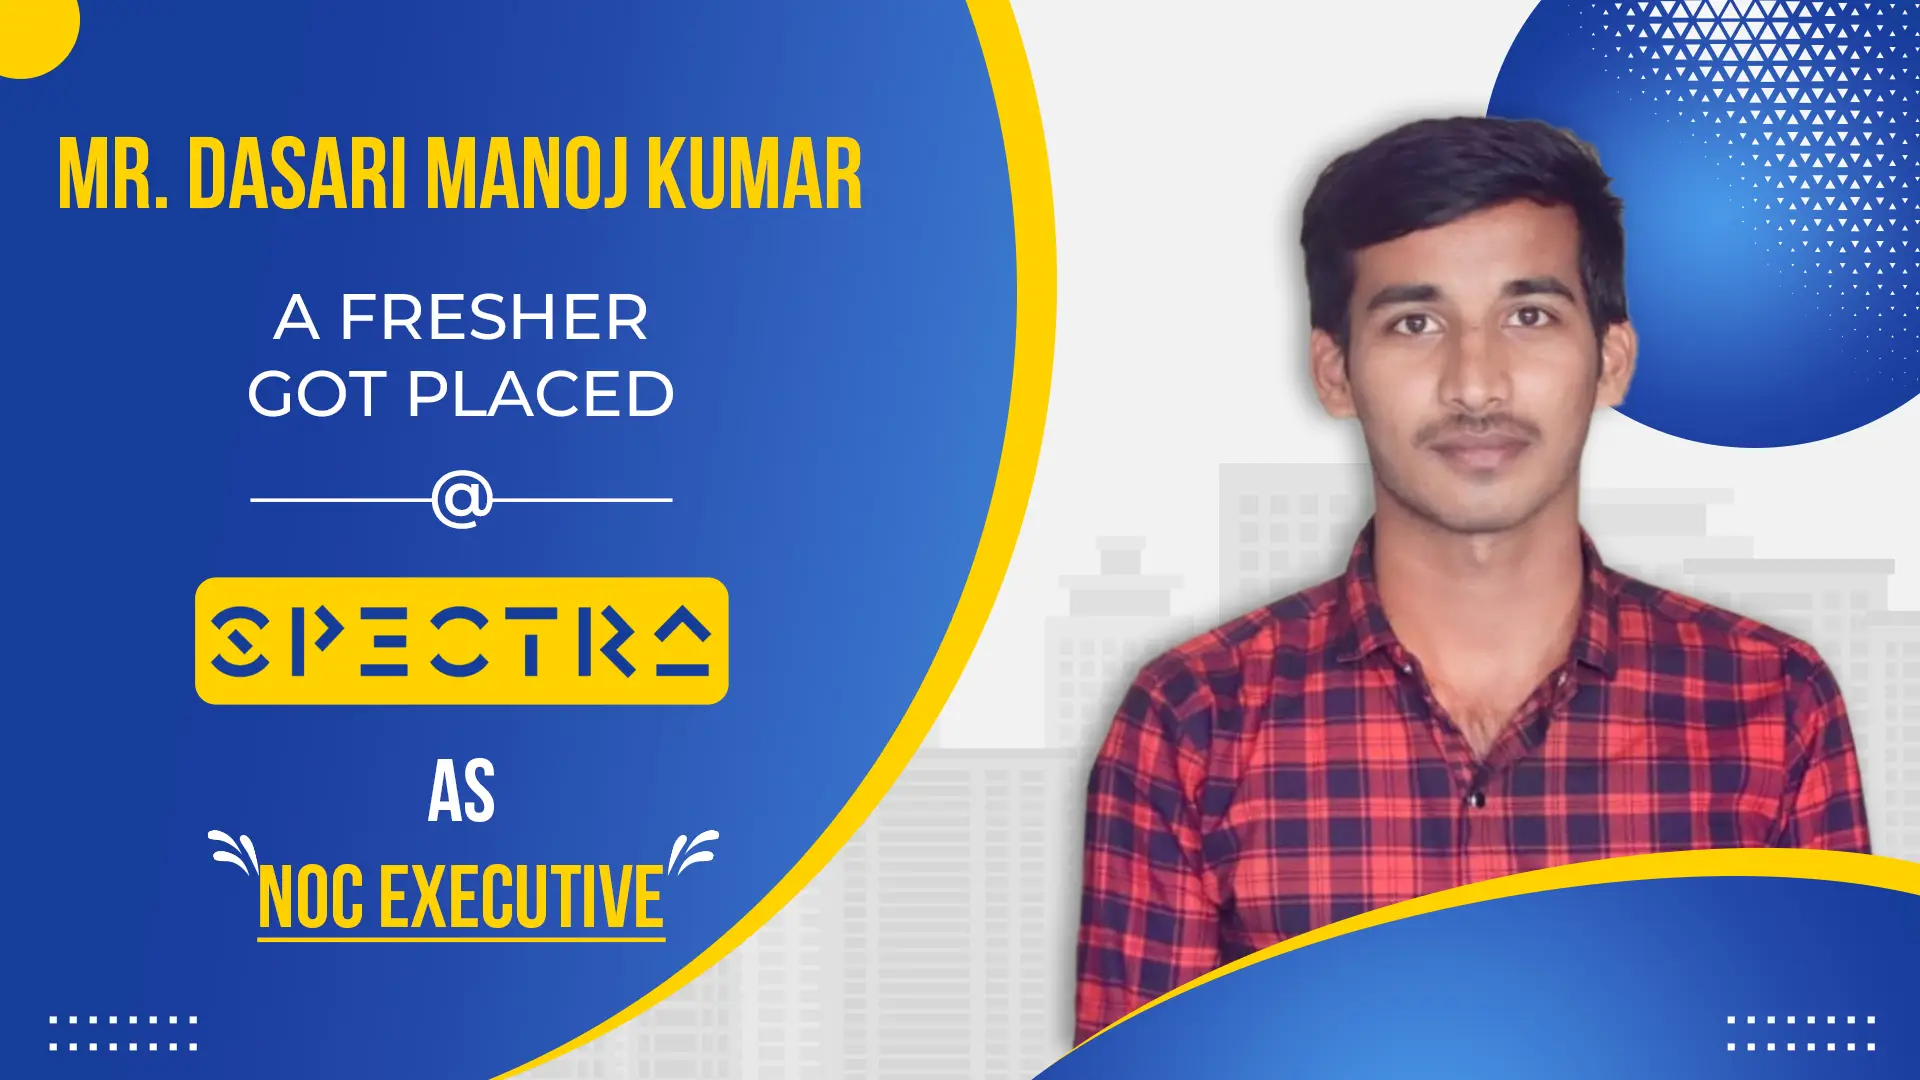 Mr. Dasari Manoj Kumar, a fresher, got placed at Spectra as NOC Executive